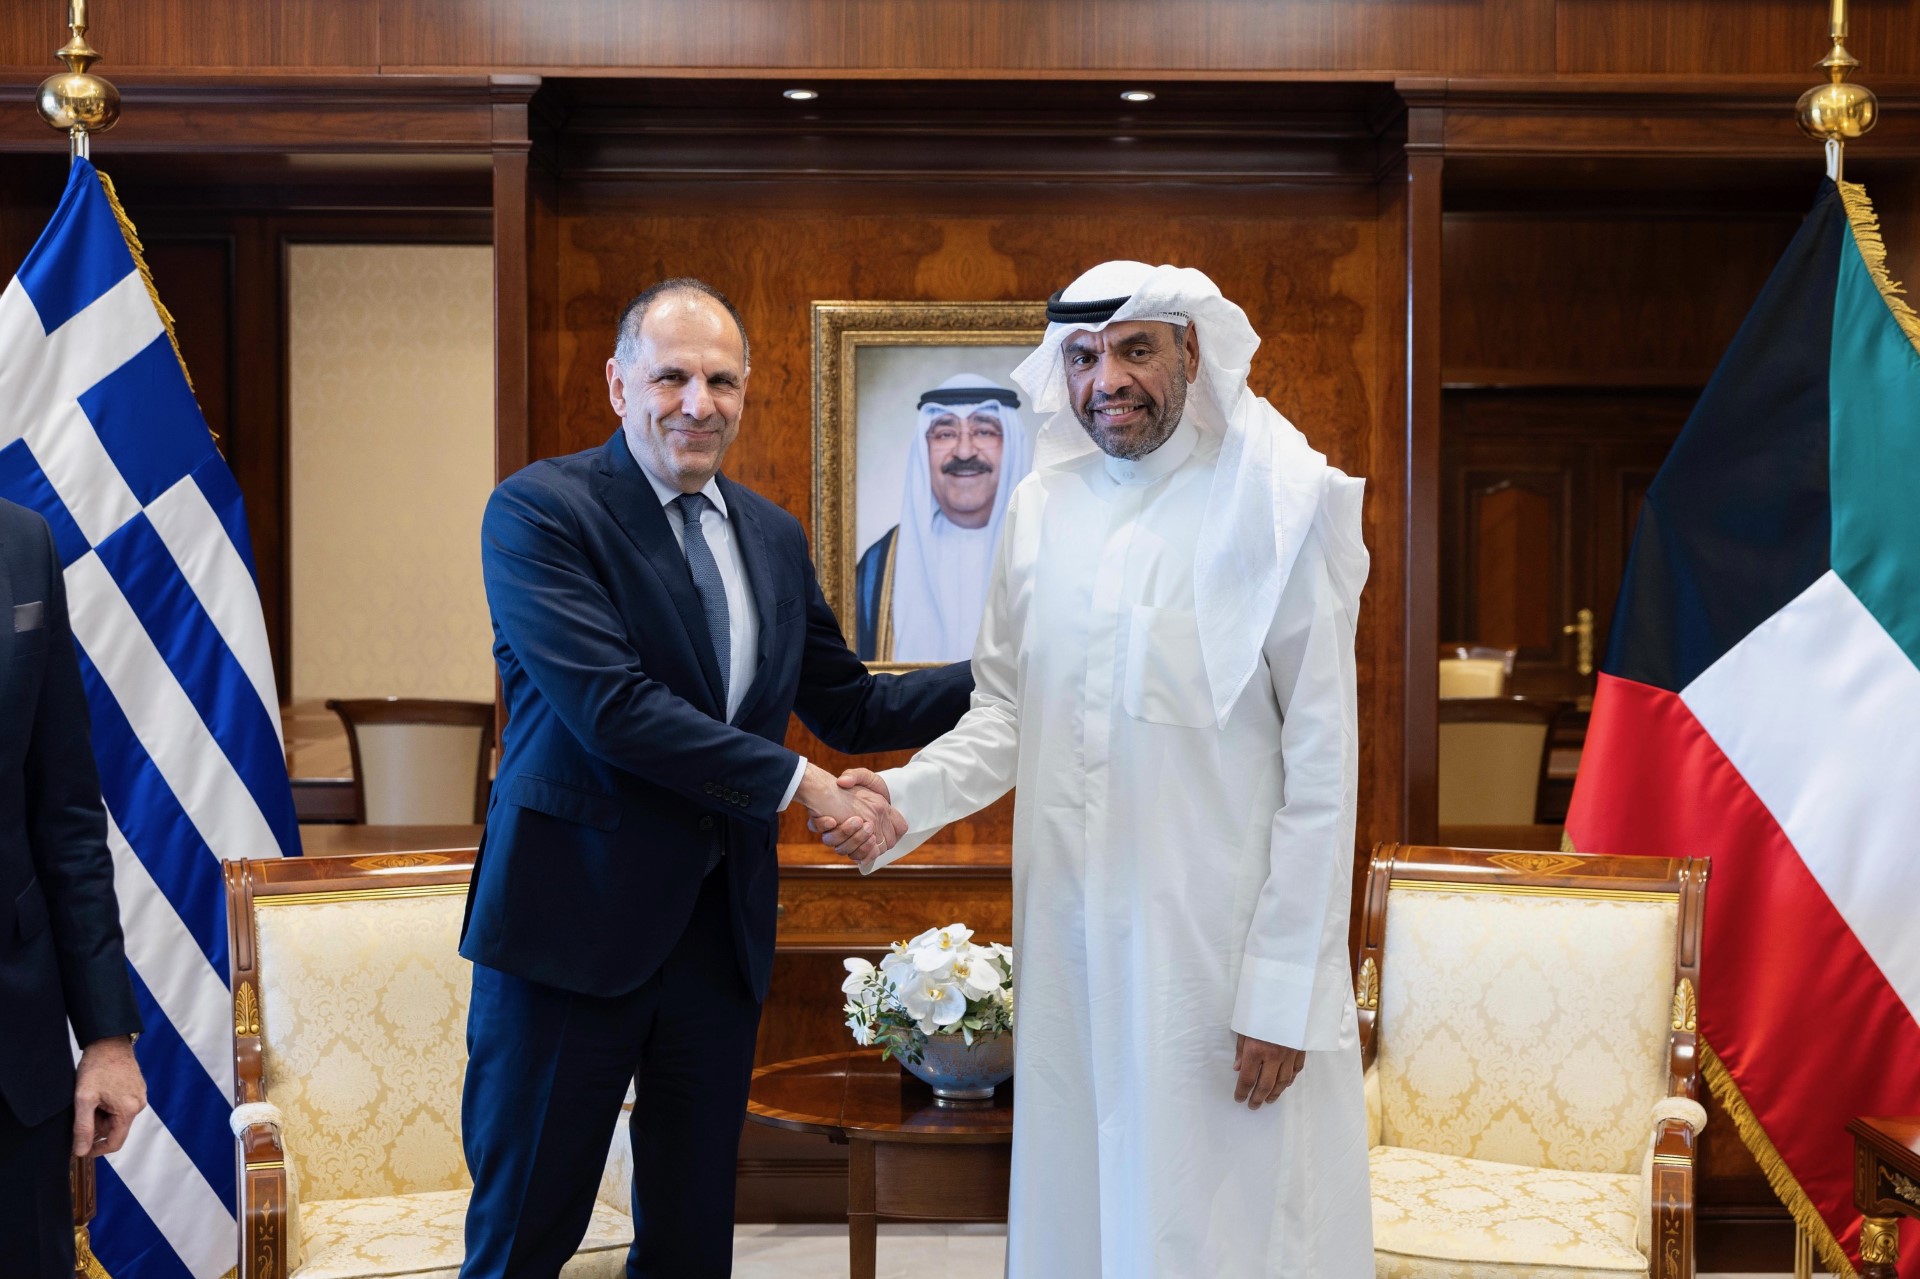 وزير الخارجية الكويتي عبدالله اليحيا يلتقي وزير الخارجية في جمهورية اليونان الصديقة جورجوس جيرابيتريتيس